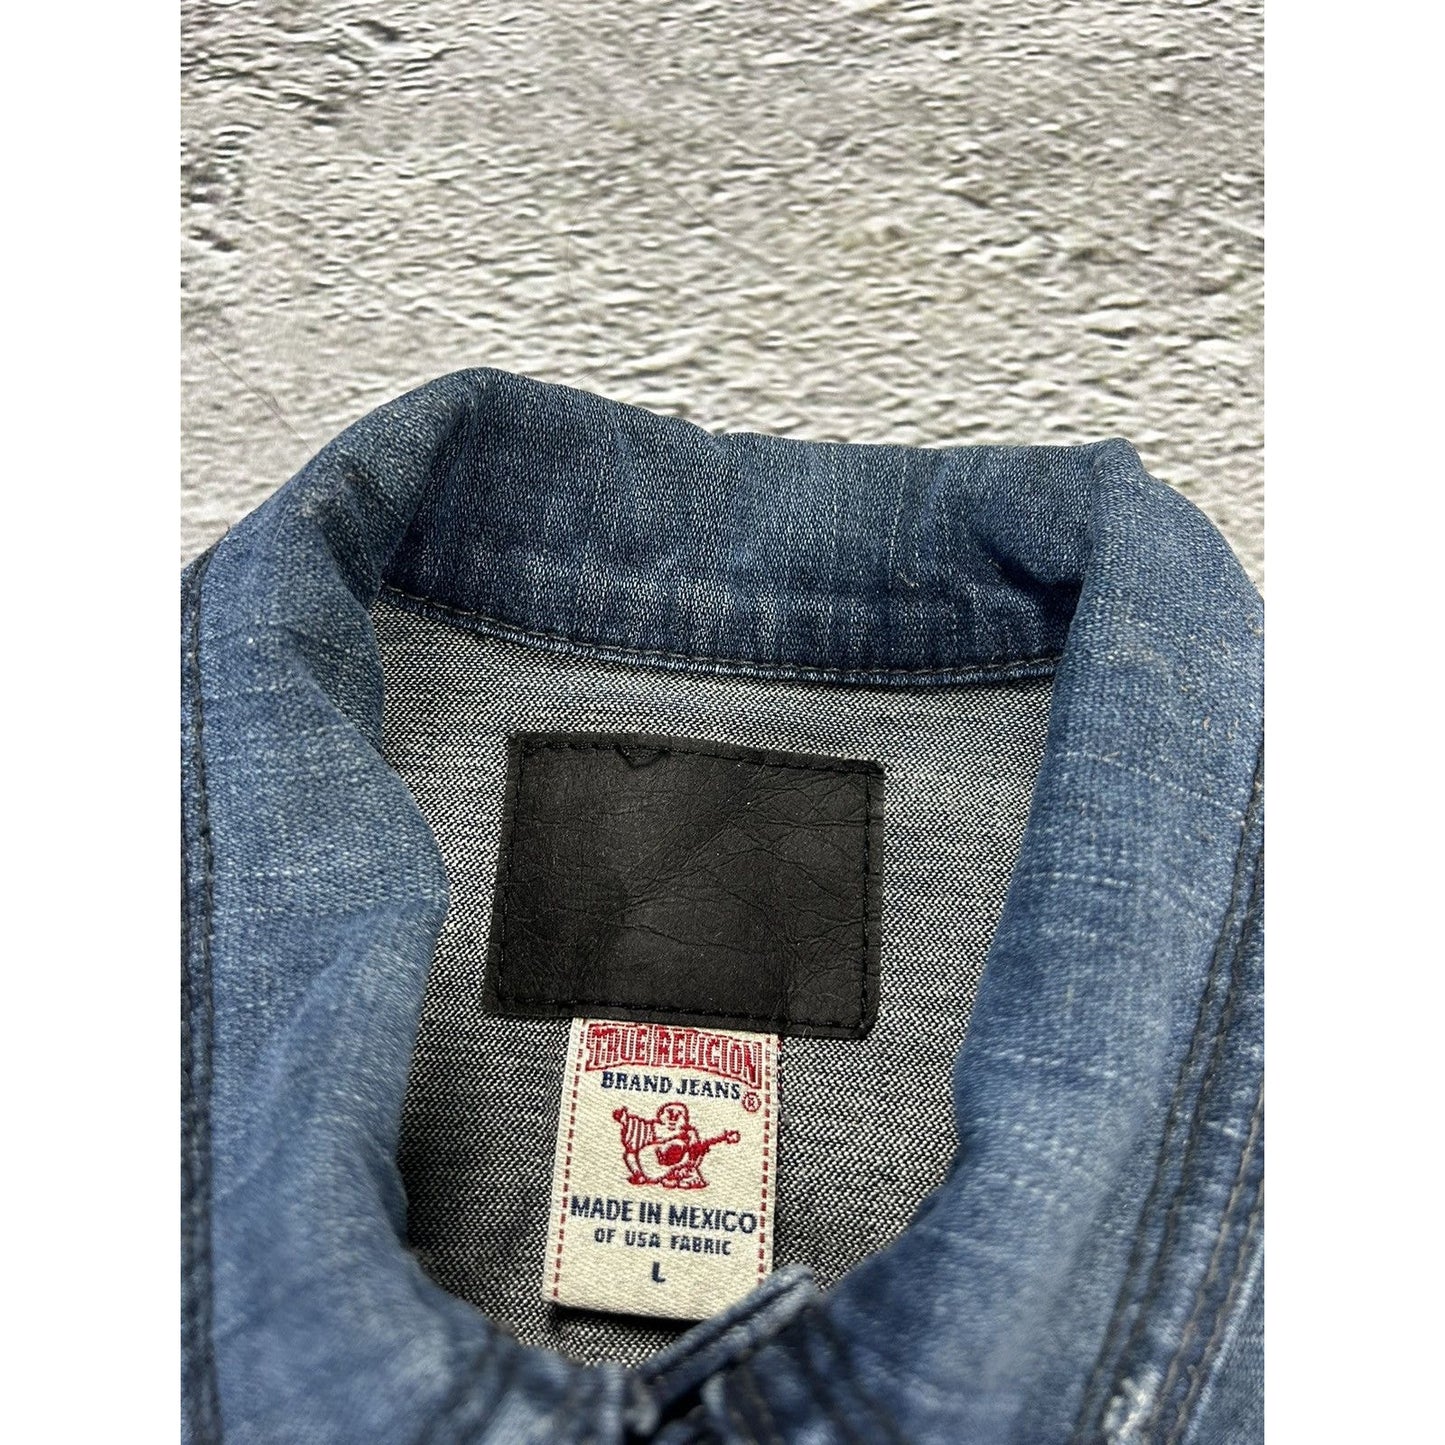 True Religion vintage denim jacket navy contrast stitching